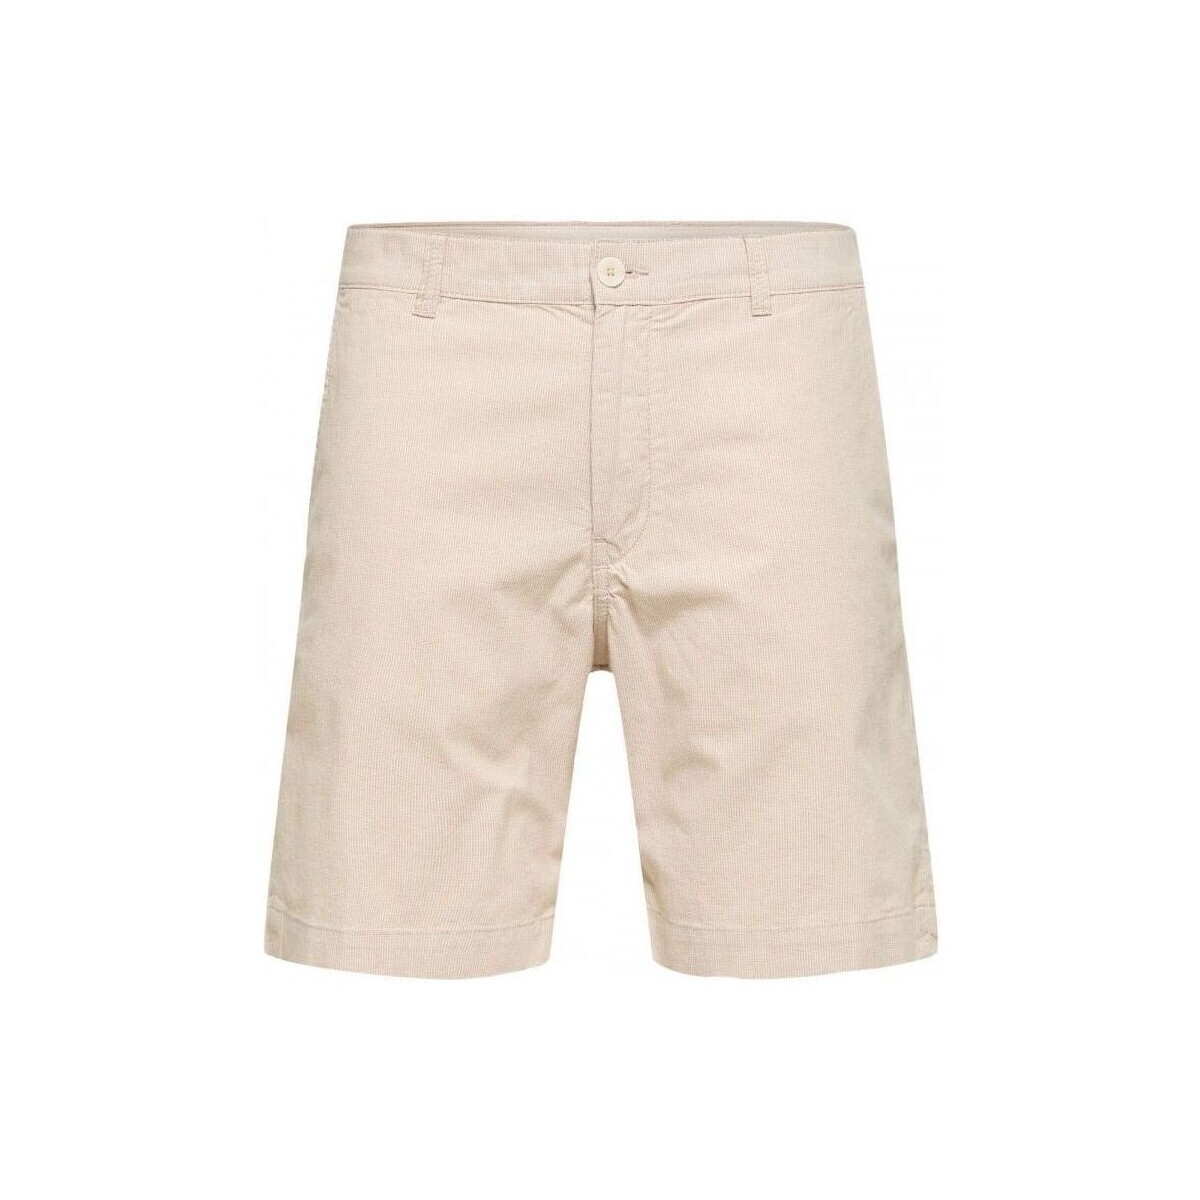 textil Hombre Shorts / Bermudas Selected 16088238 LOOSE LOIK-INCENSE Beige